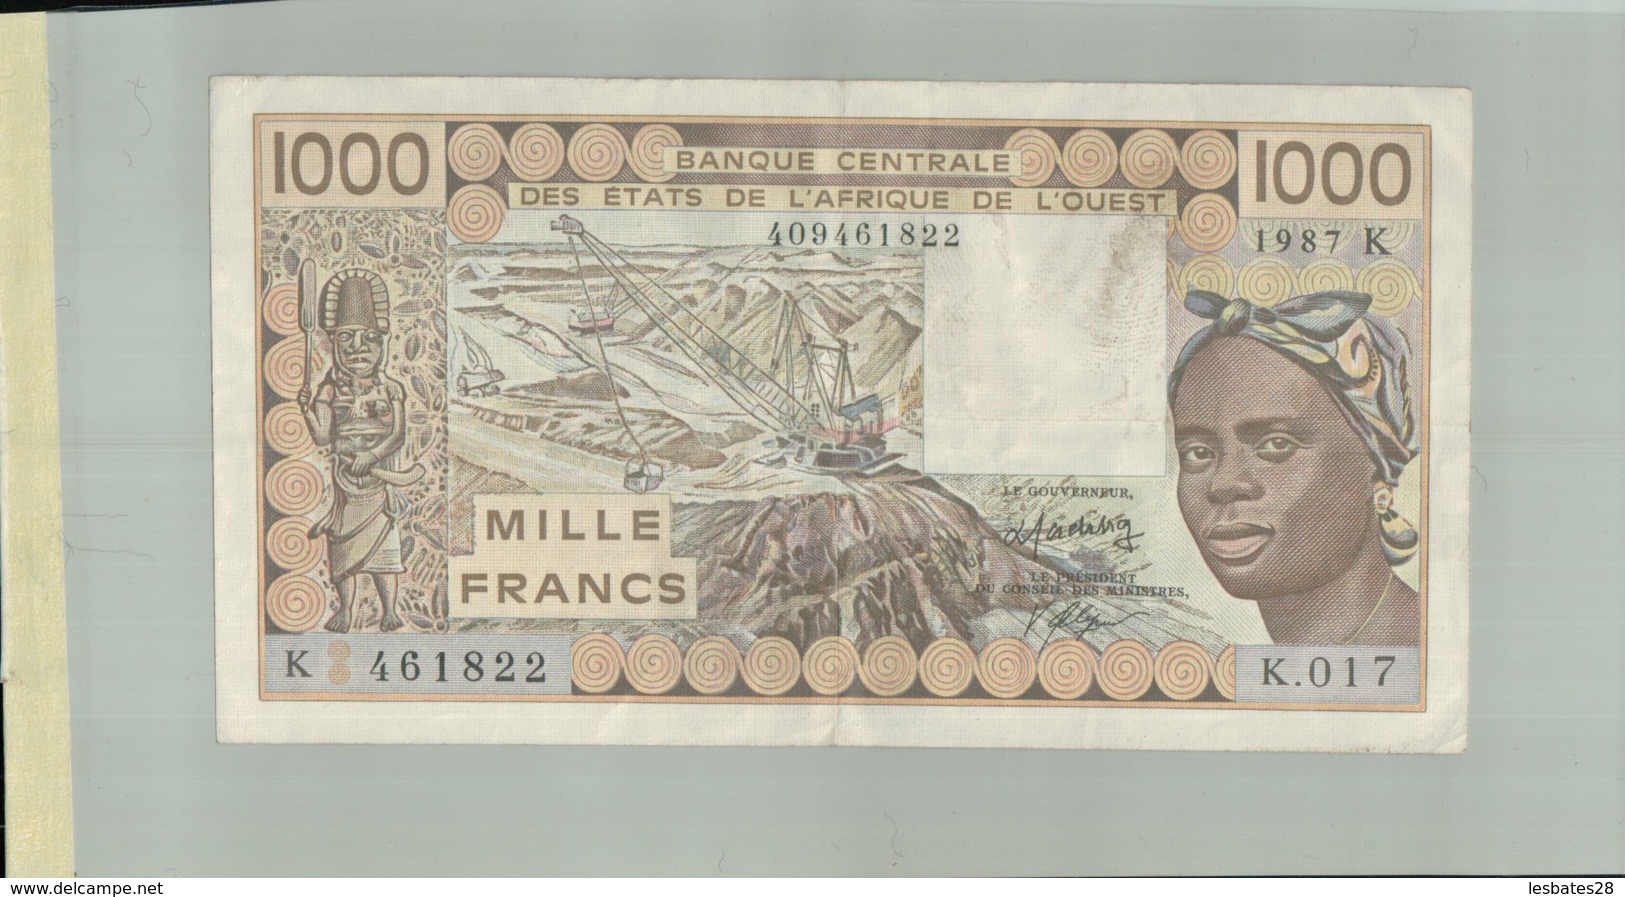 BILLET DE BANQUE  CENTRALE DES ETATS DE L'AFRIQUE DE L'OUEST   1000  " SENEGAL" "1987 K"  Sept  2019  Alb 16 - West-Afrikaanse Staten